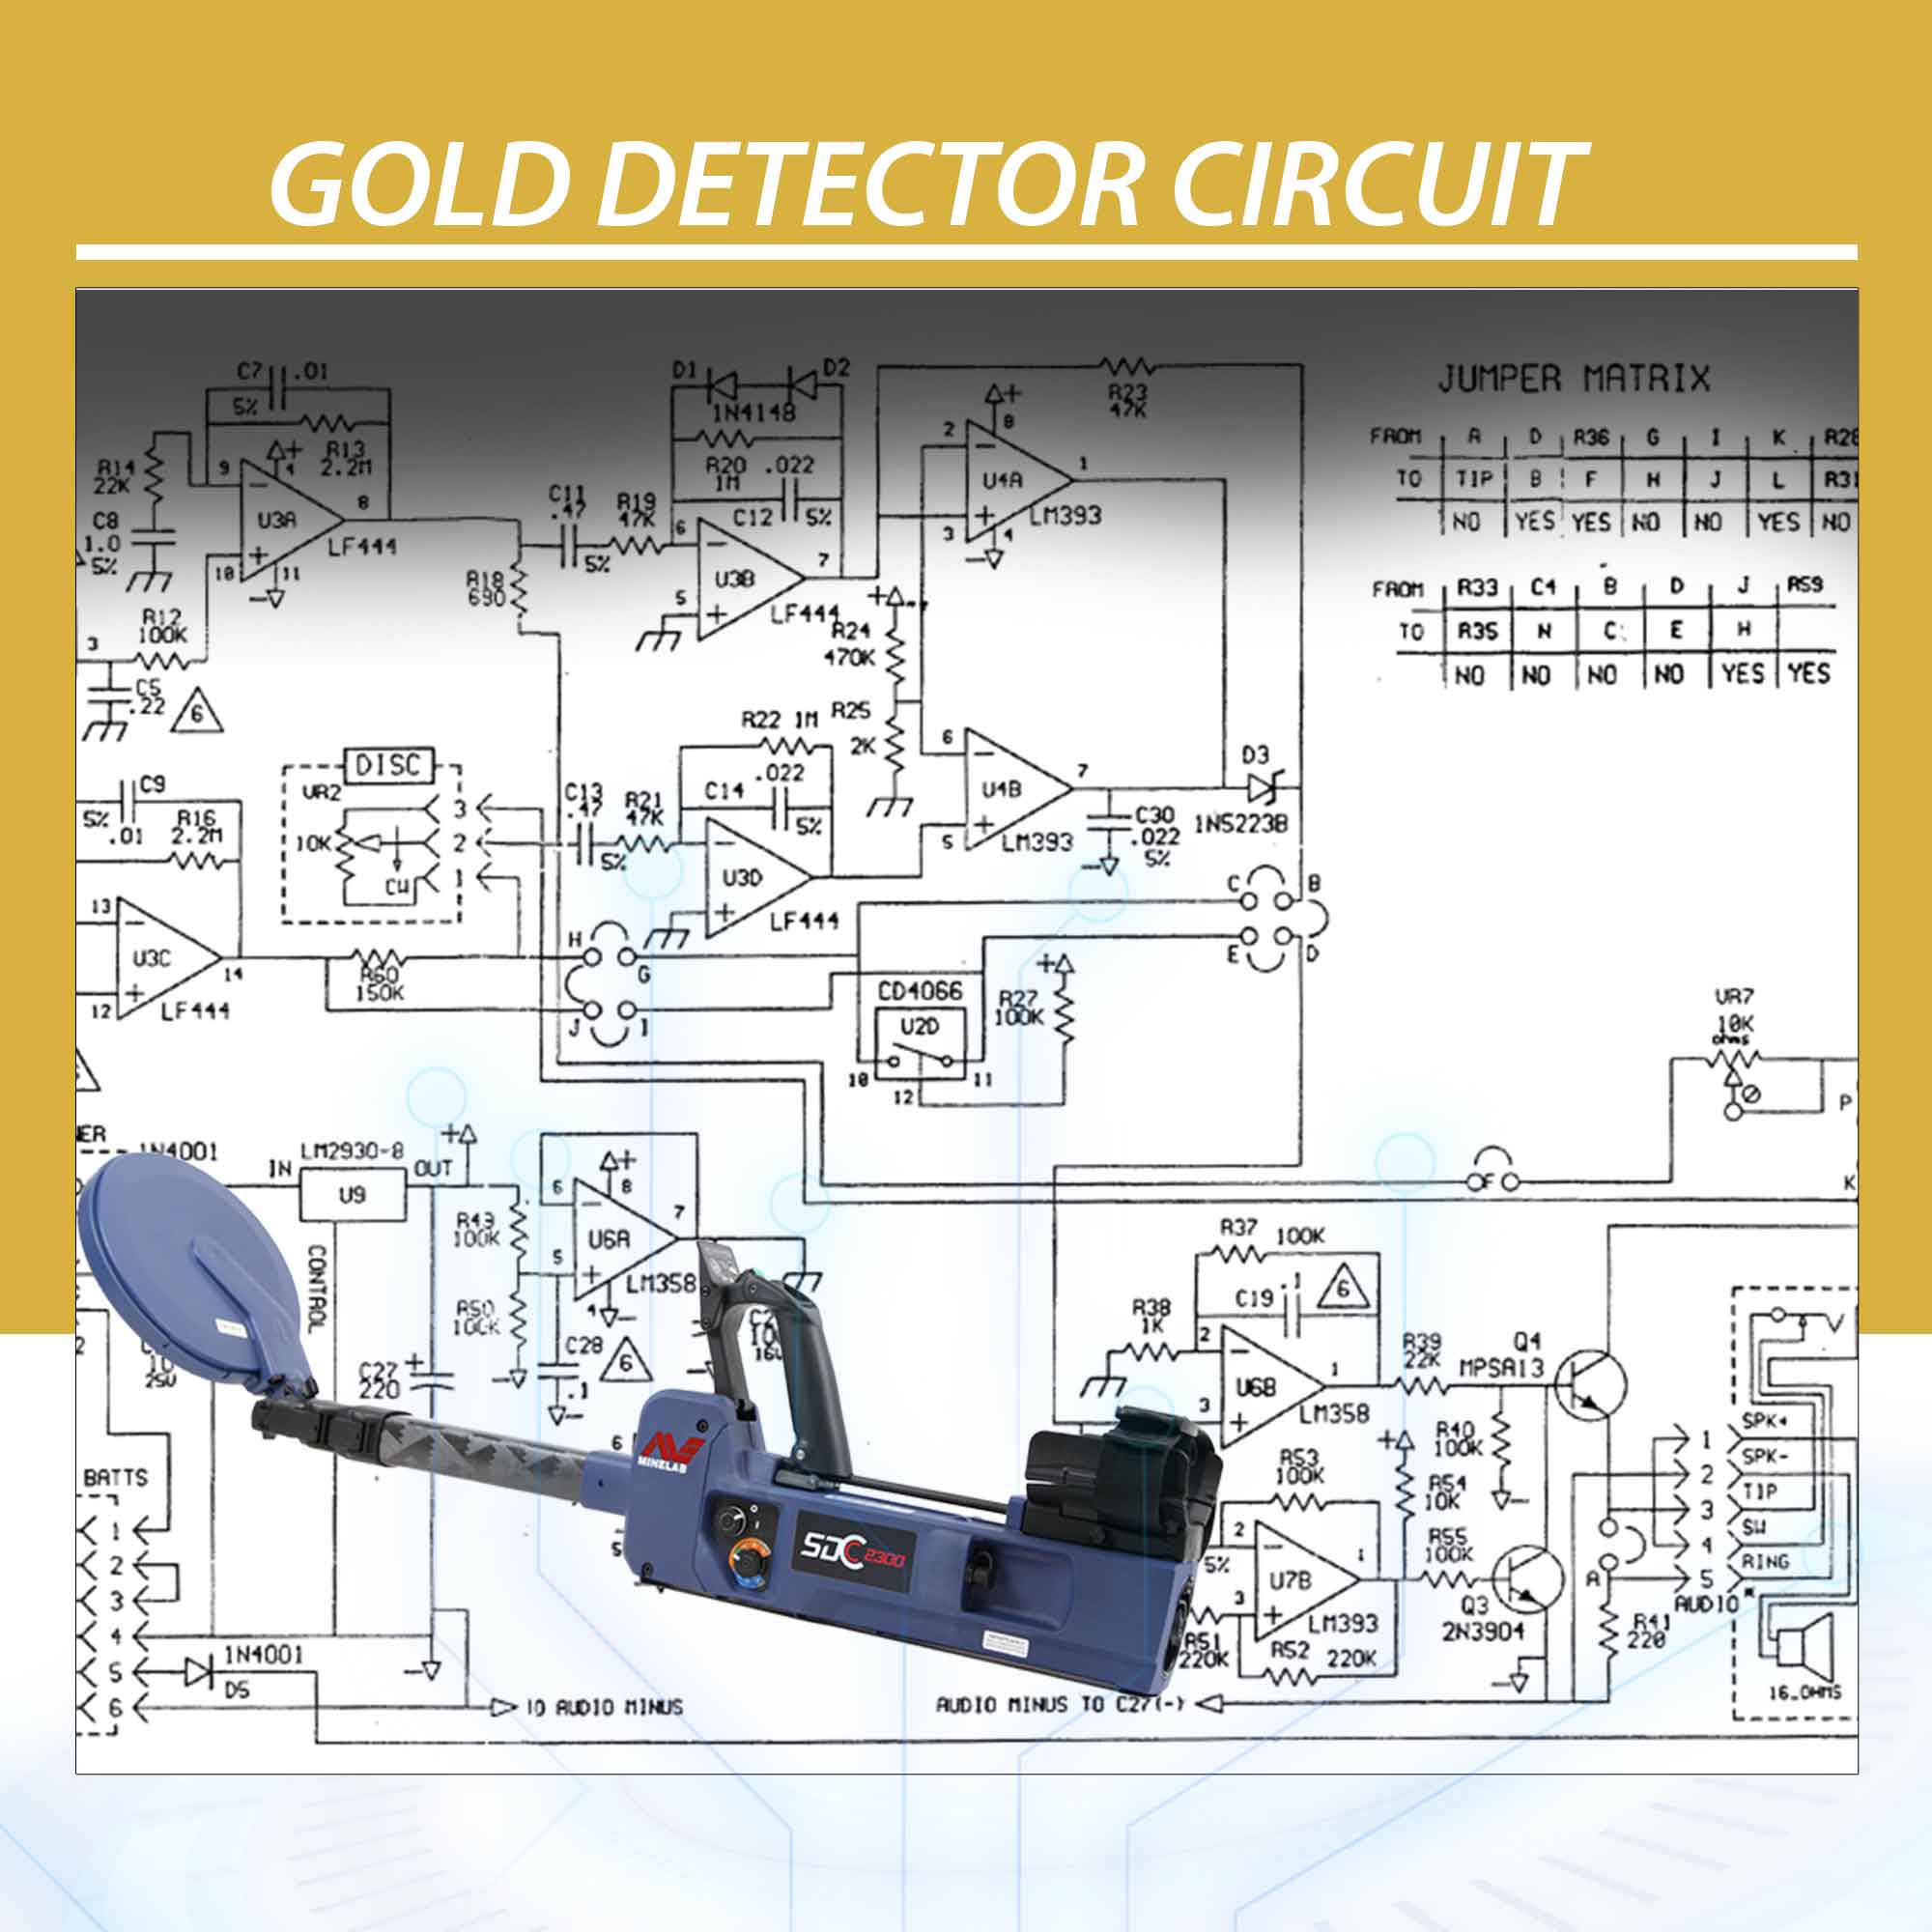 Gold Detector Circuit Gold Detector Circuit | What is Gold Detector Circuit Diagram